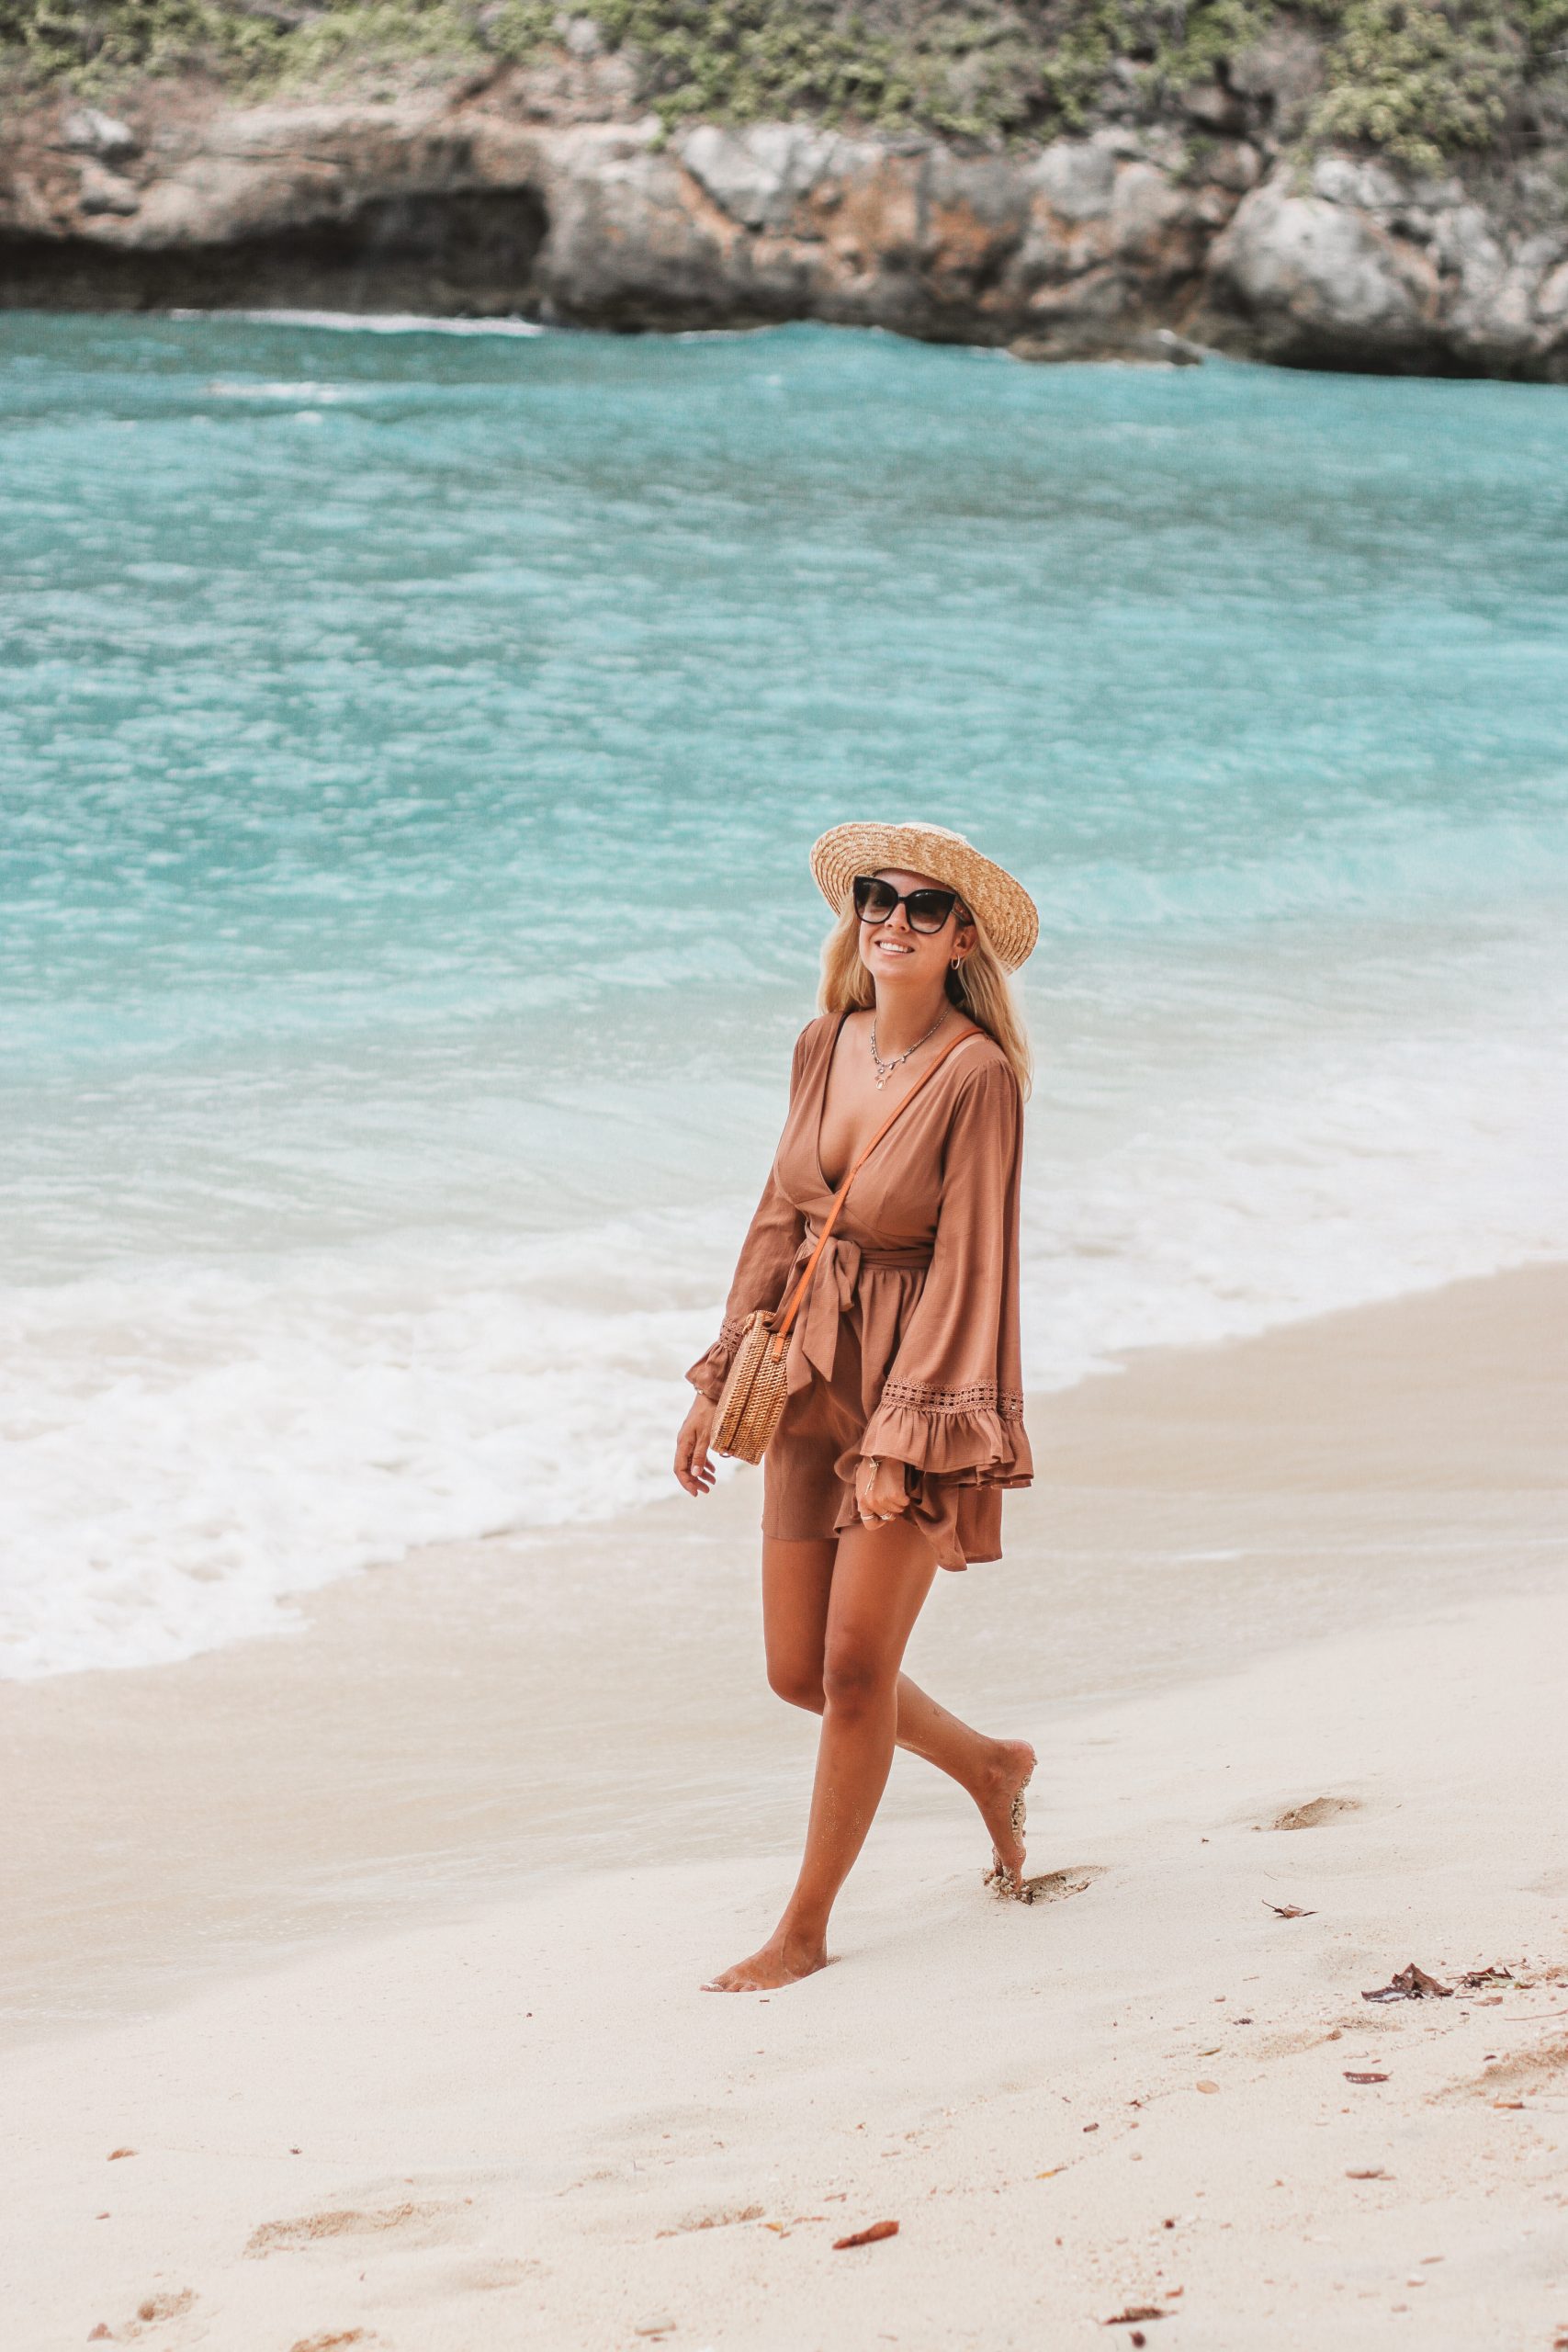 Beach outfit in Bali // Atuh Beach // Fashion blogger